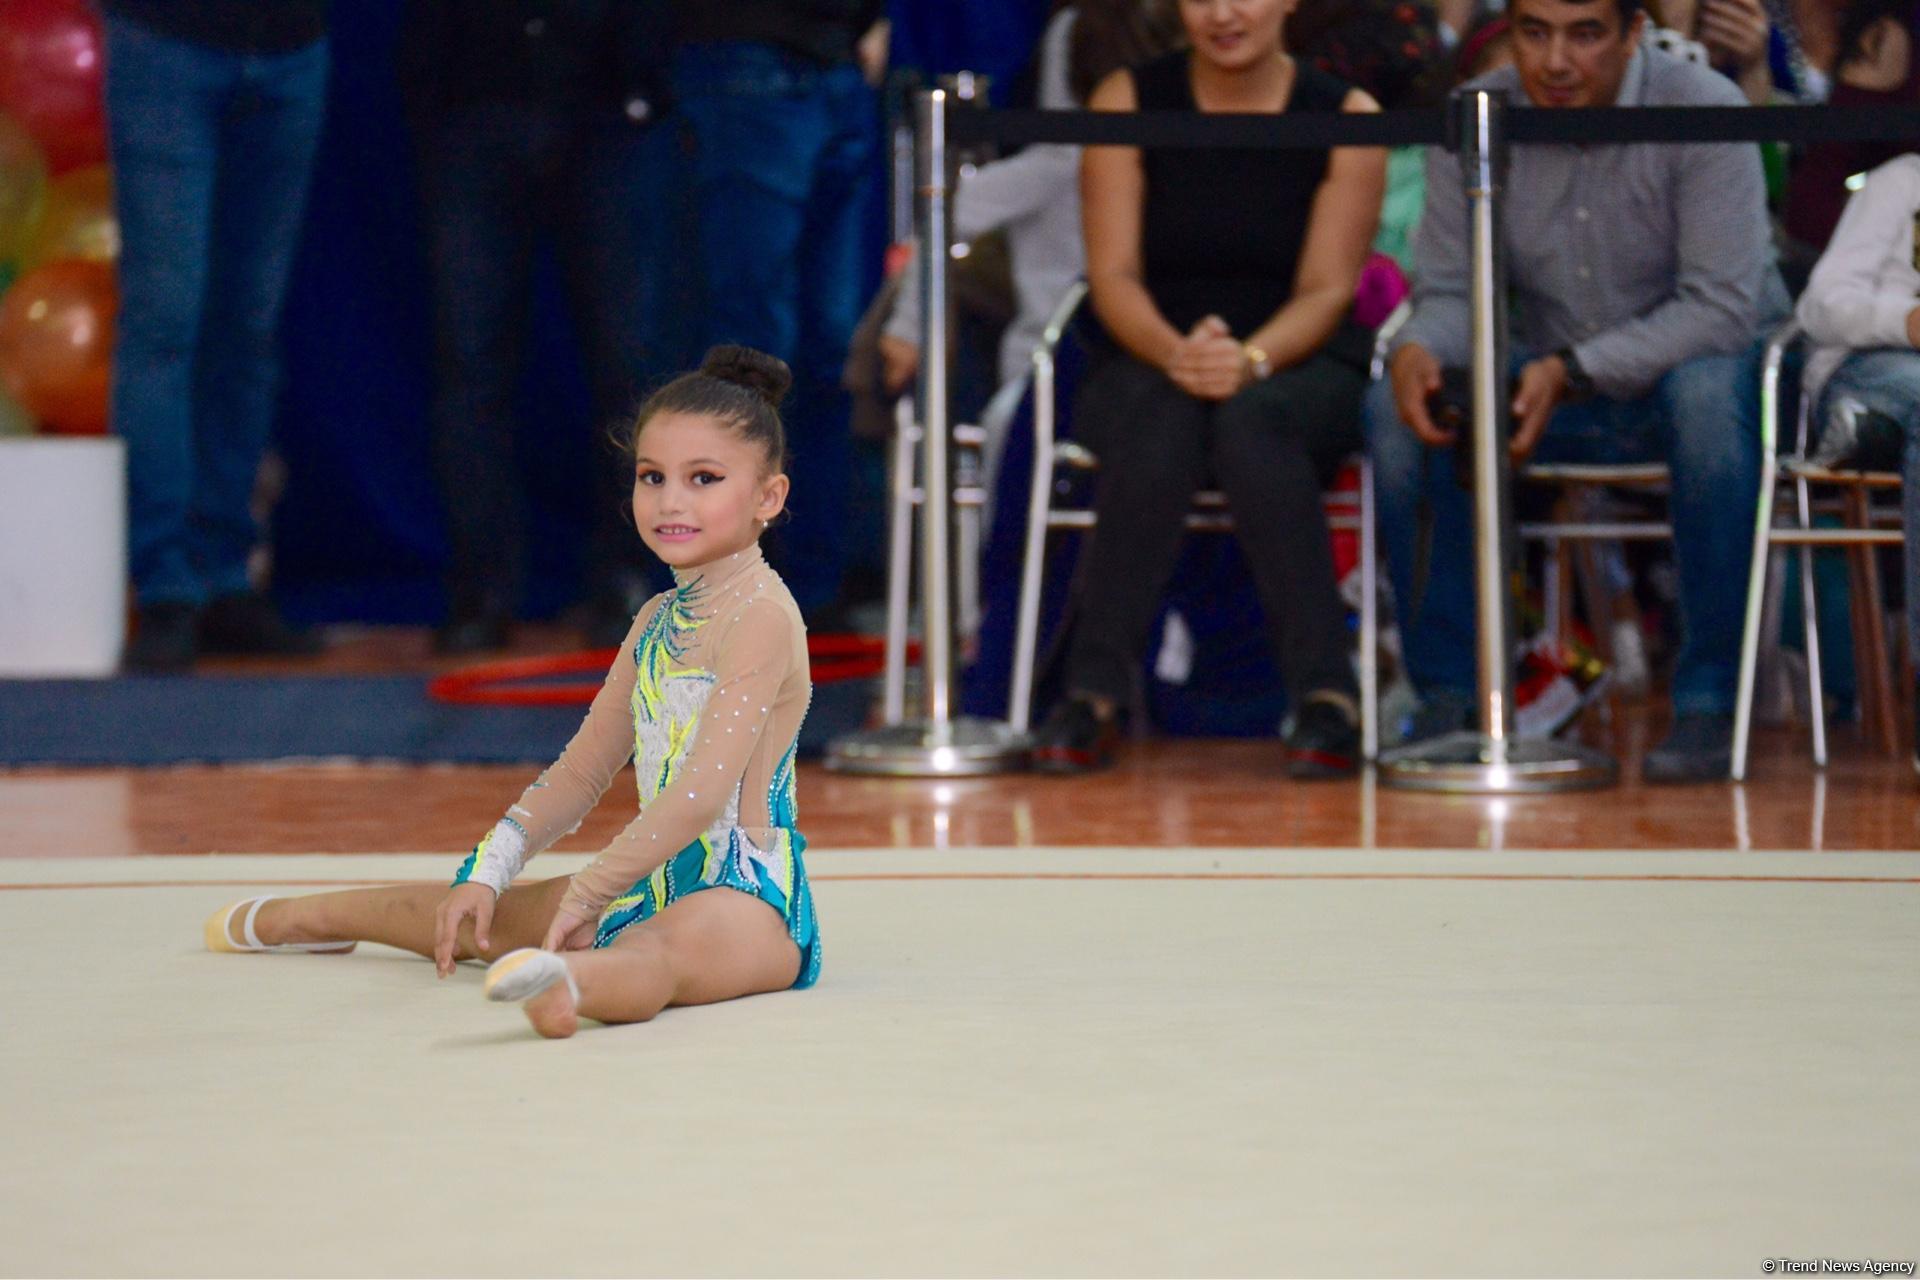 Bədii gimnastika üzrə Payız Ulduzları açıq birinciliyi keçirilib (FOTO)